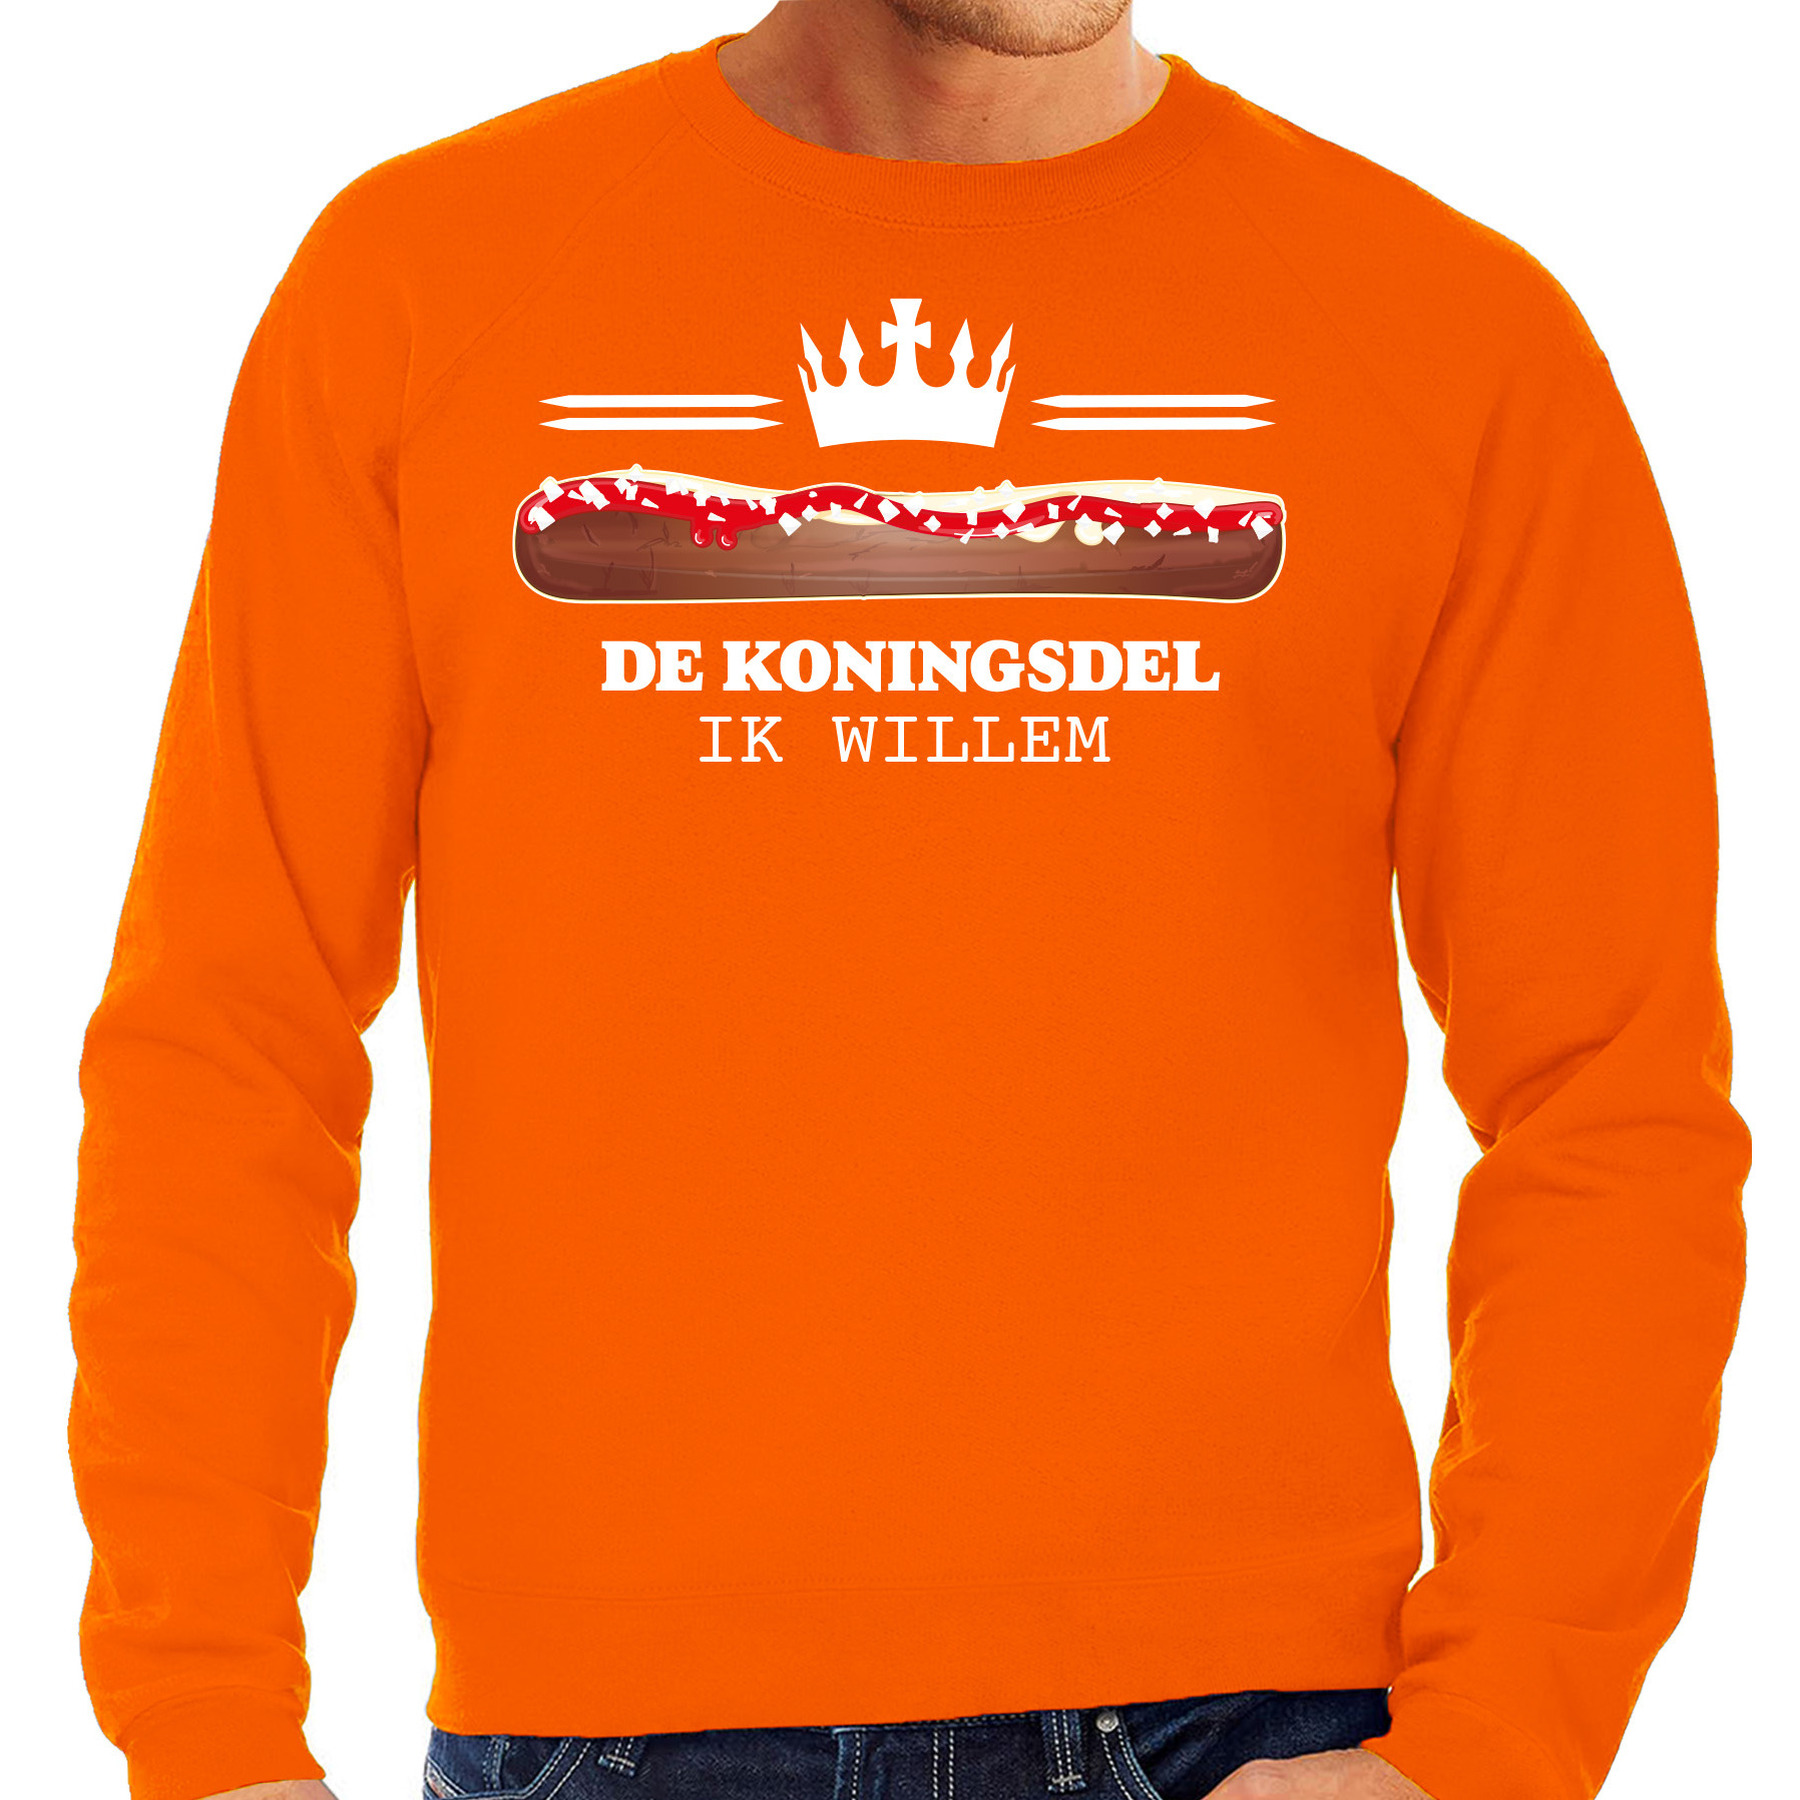 Koningsdag sweater voor heren koningsdel-frikandel oranje oranje feestkleding